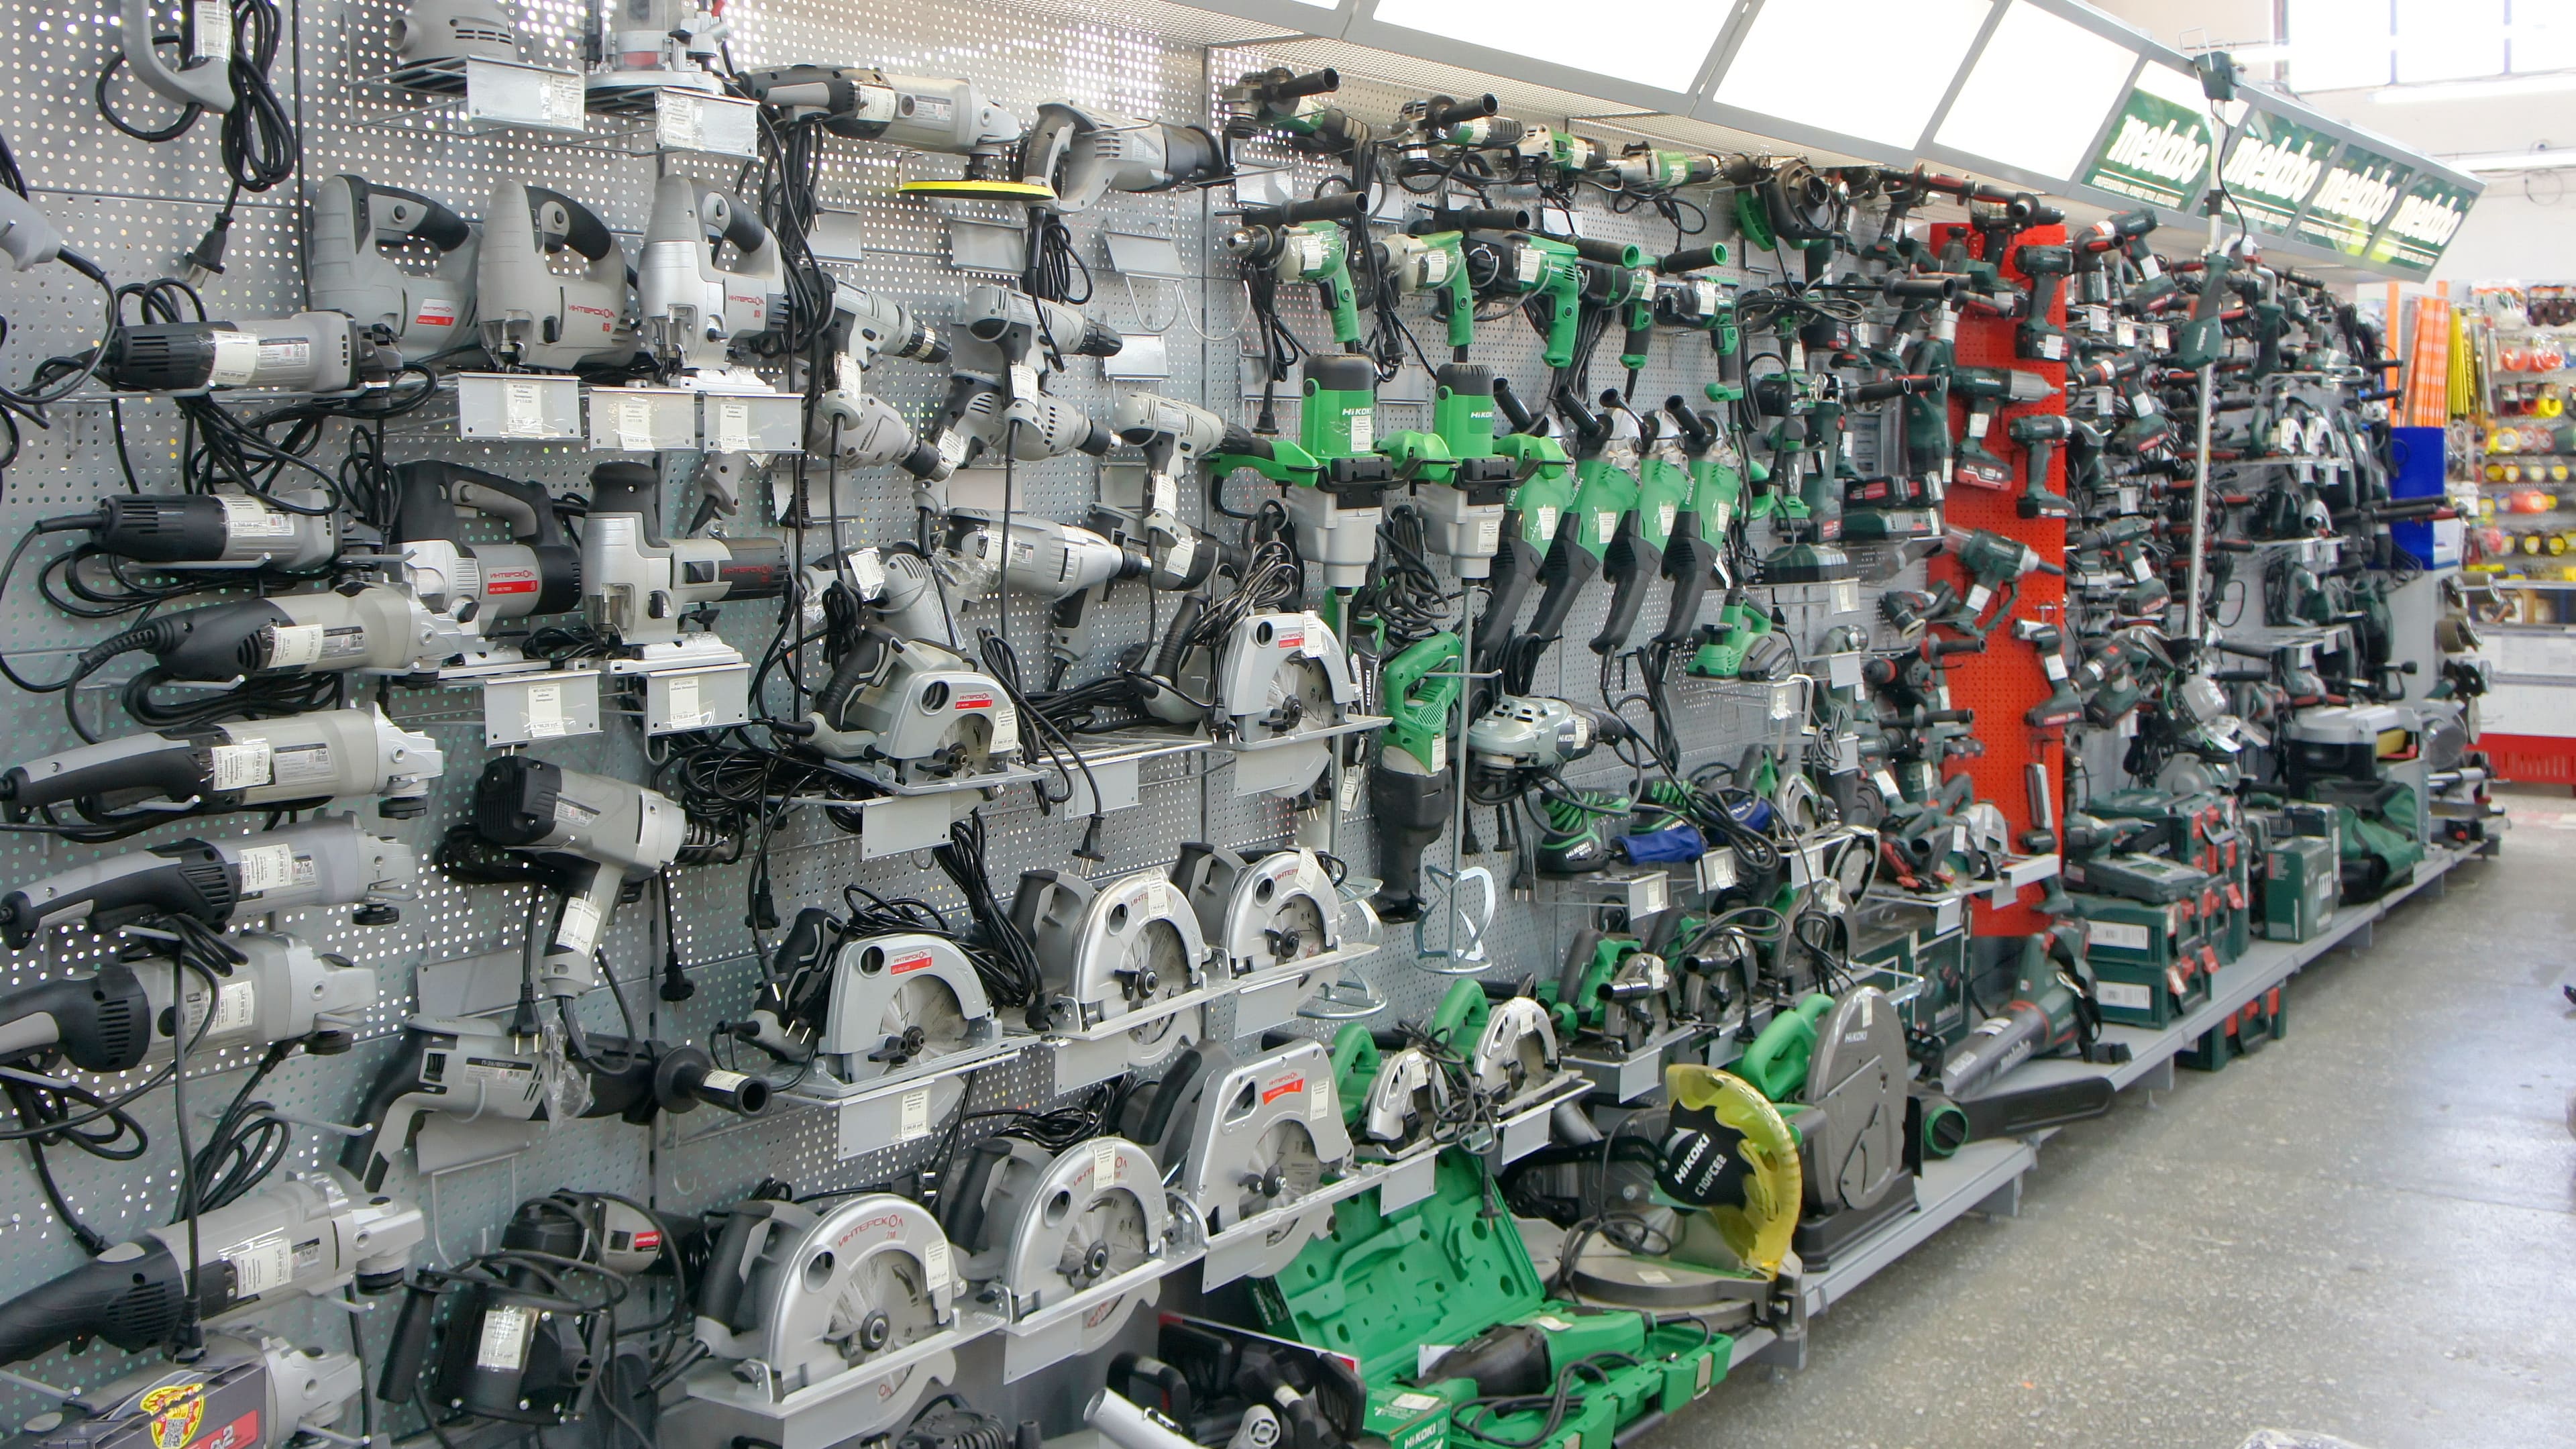 «АВК-Инструмент» – торговая сеть магазинов электро- и бензоинструмента, пневматического и компрессорного оборудования, садово-огородной техники и инвентаря в Ангарске.